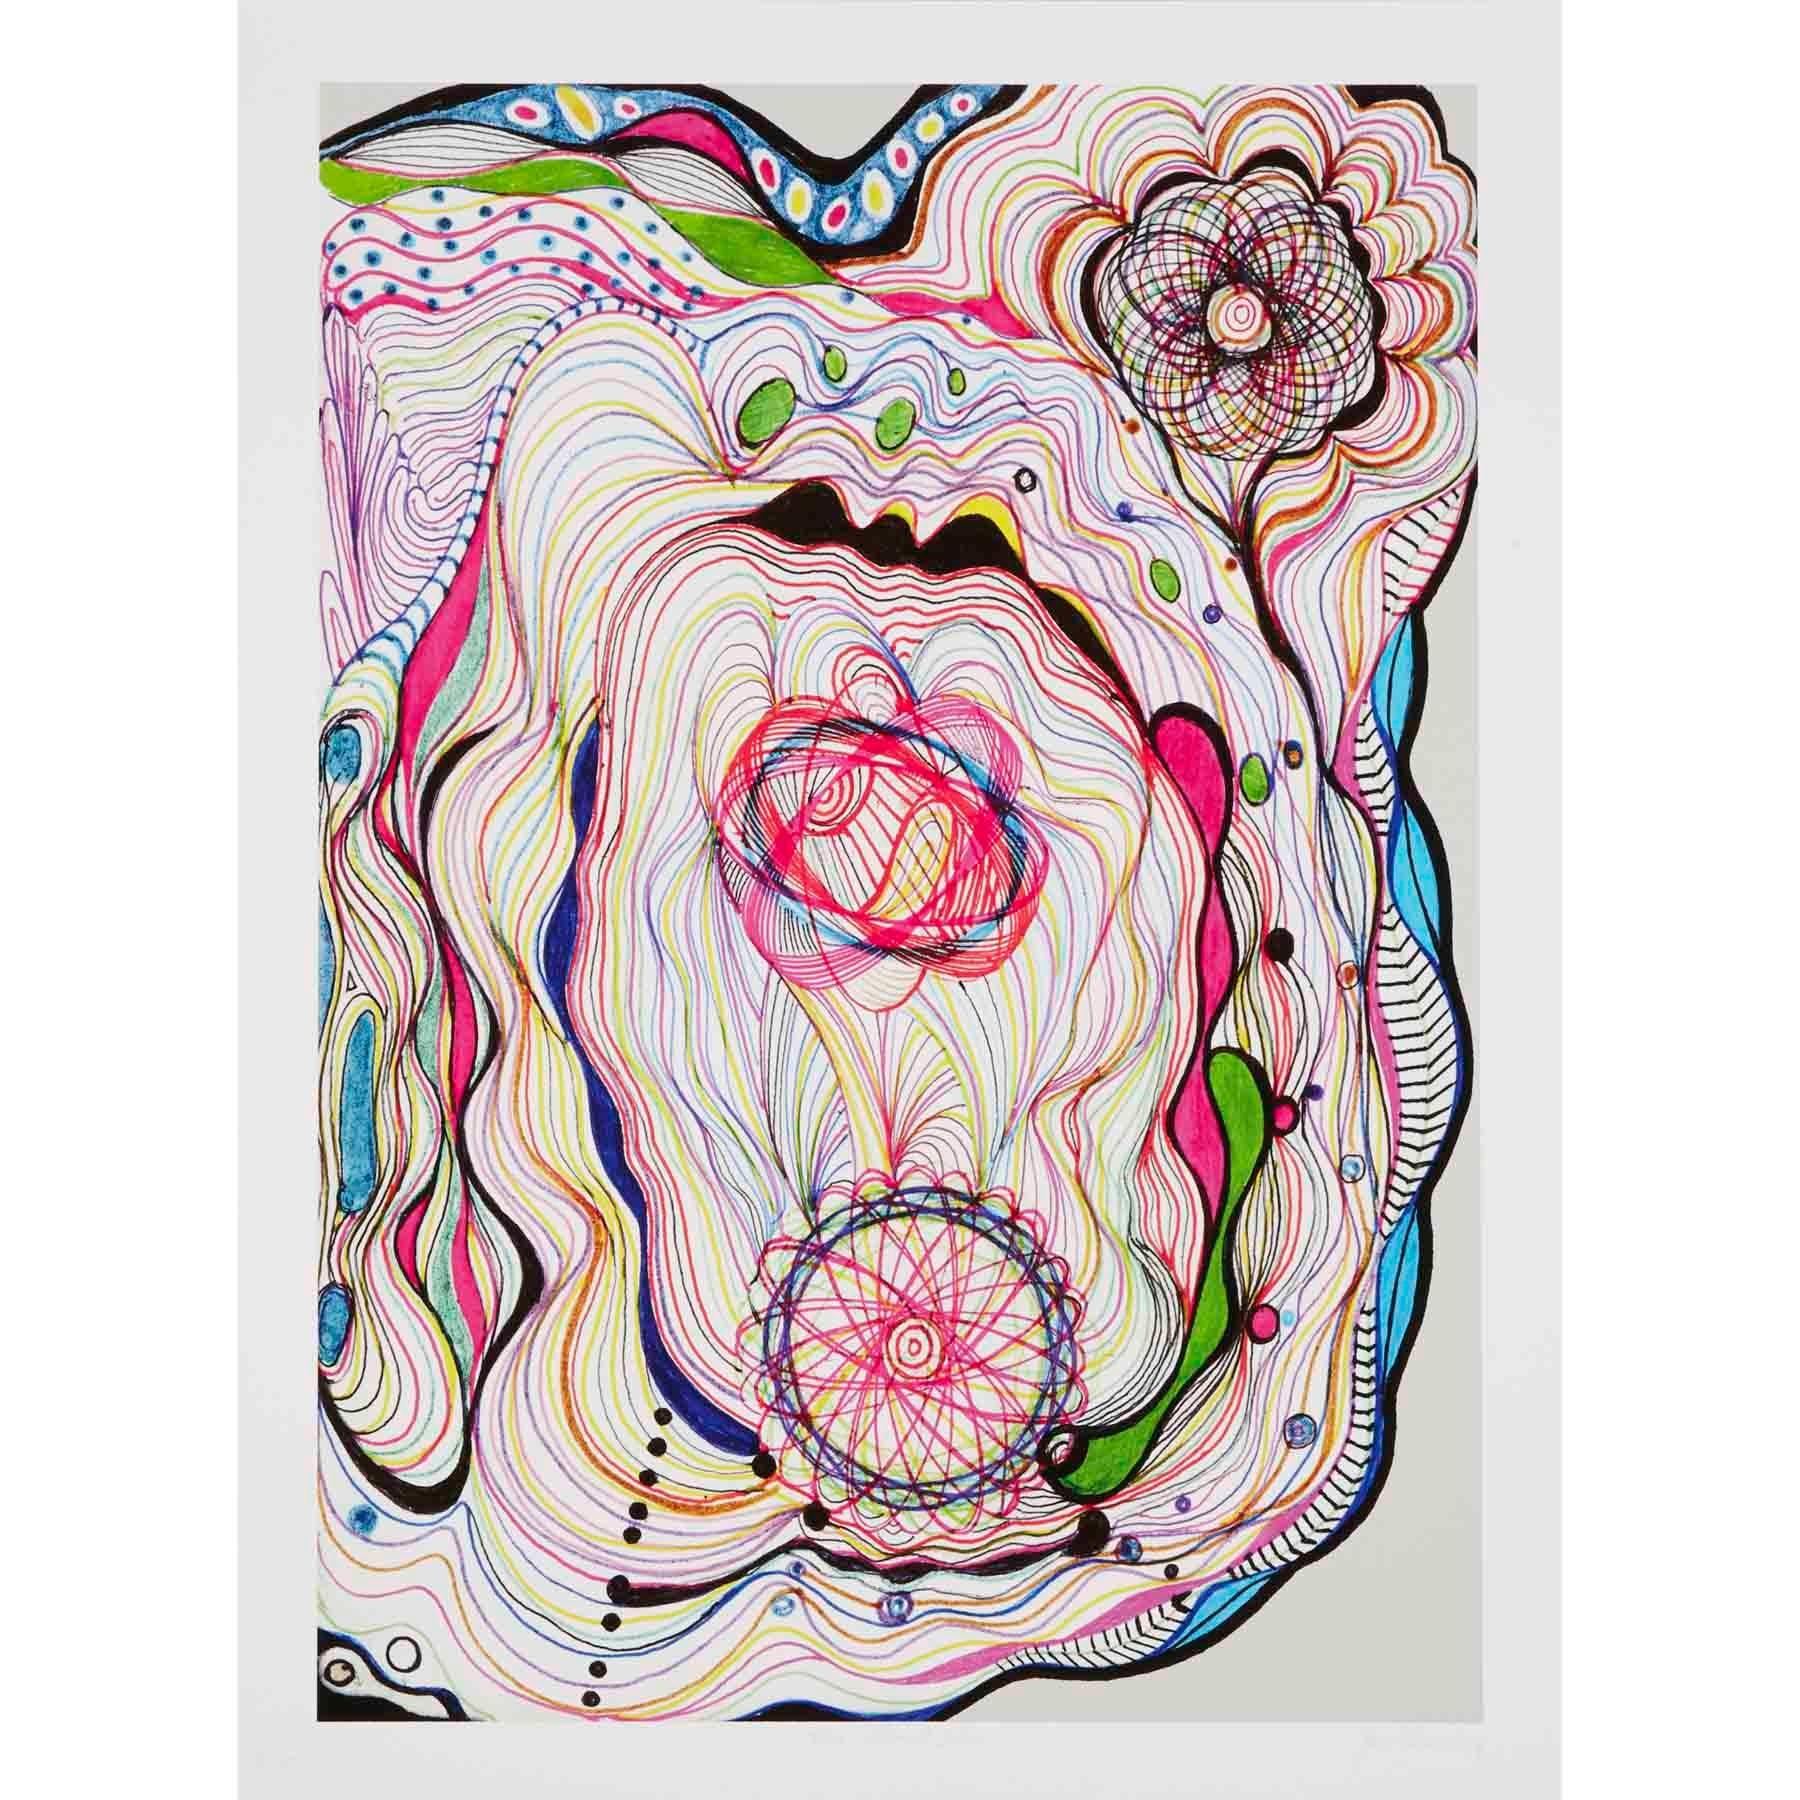 Abstract Print Joana Vasconcelos - Filament I, contemporain, 21e siècle, imprimé pigmentaire, édition limitée